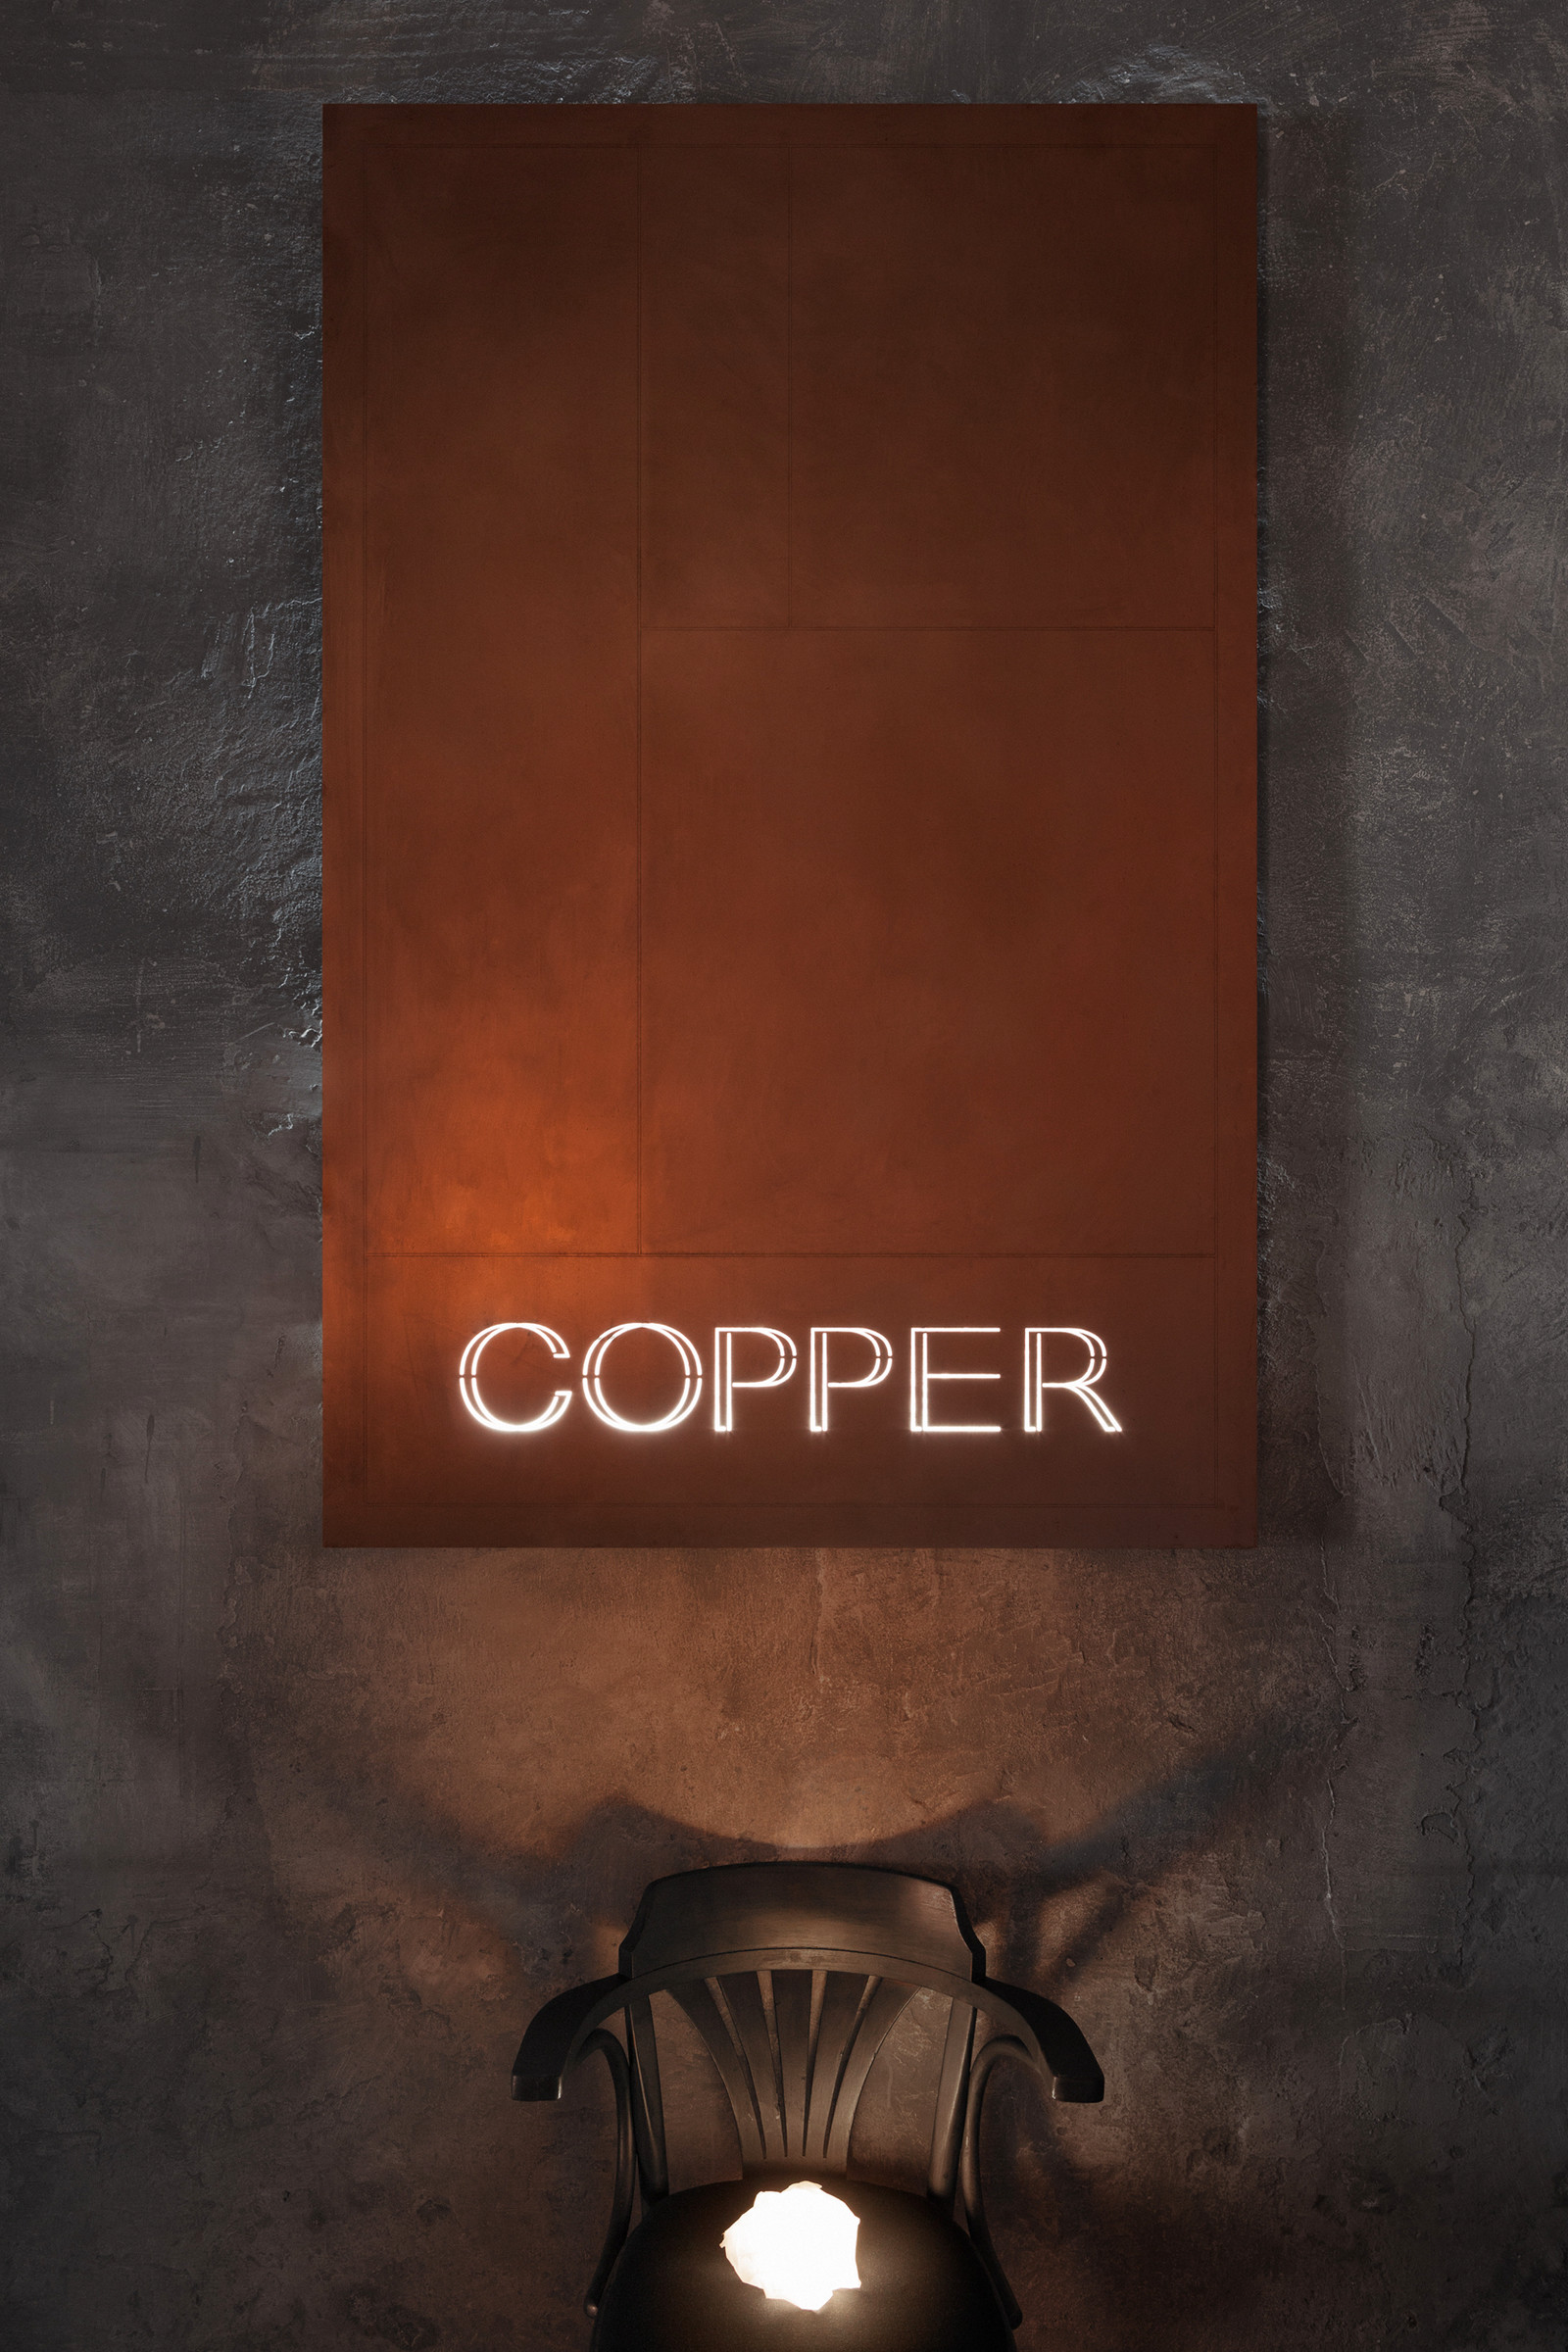 Copper Bar in the Czech Republic